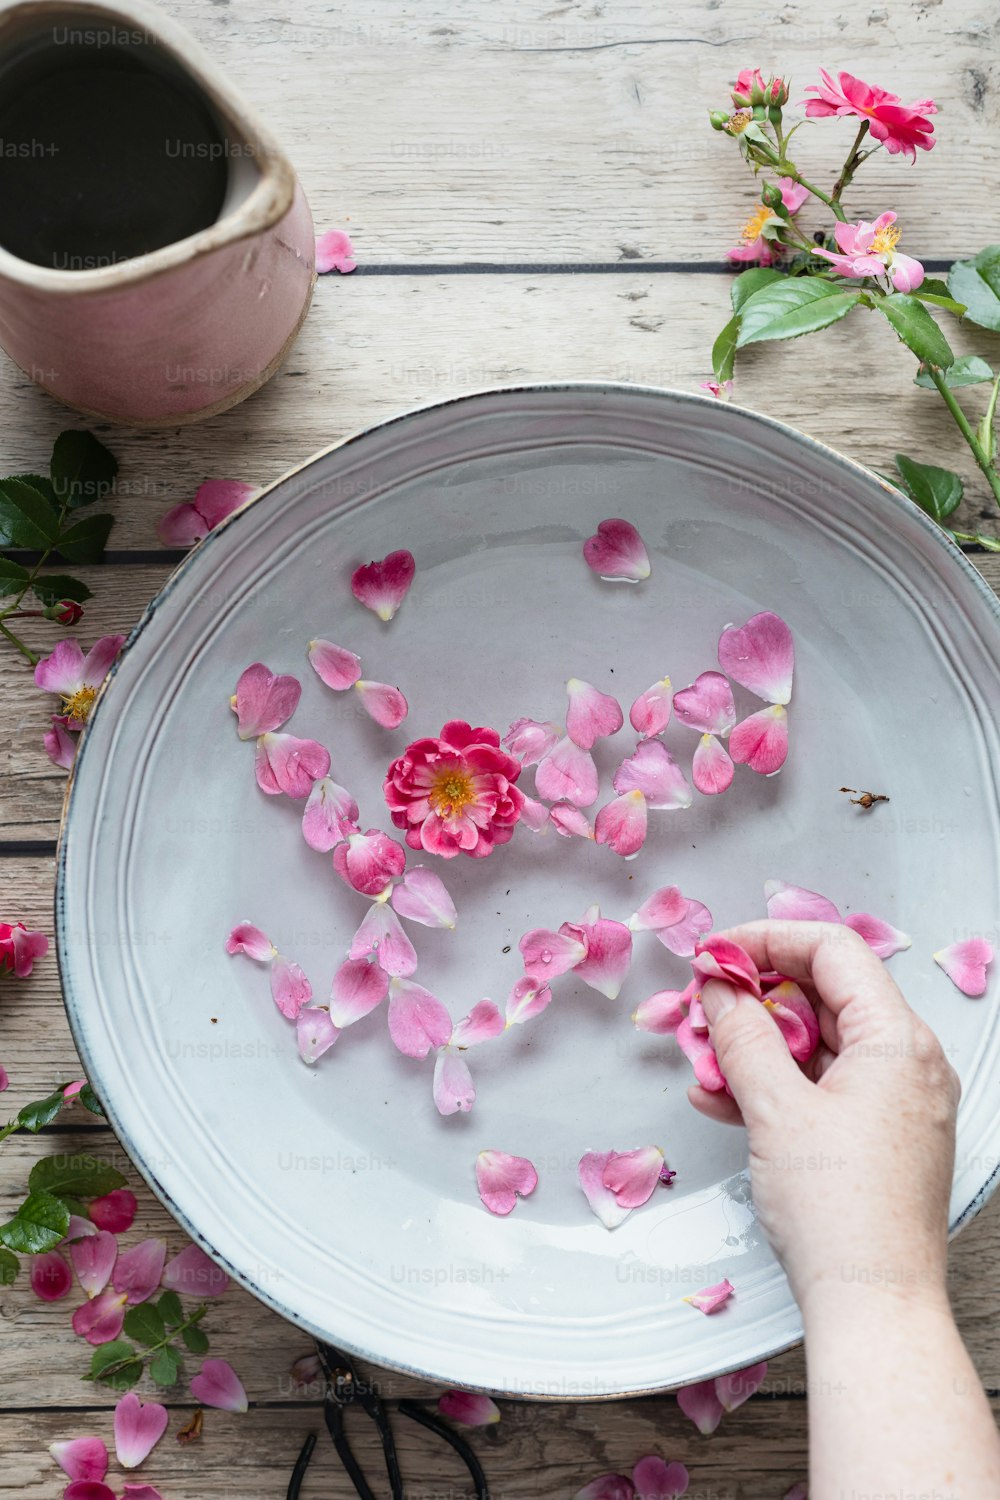 une personne dispose des fleurs roses sur une assiette blanche